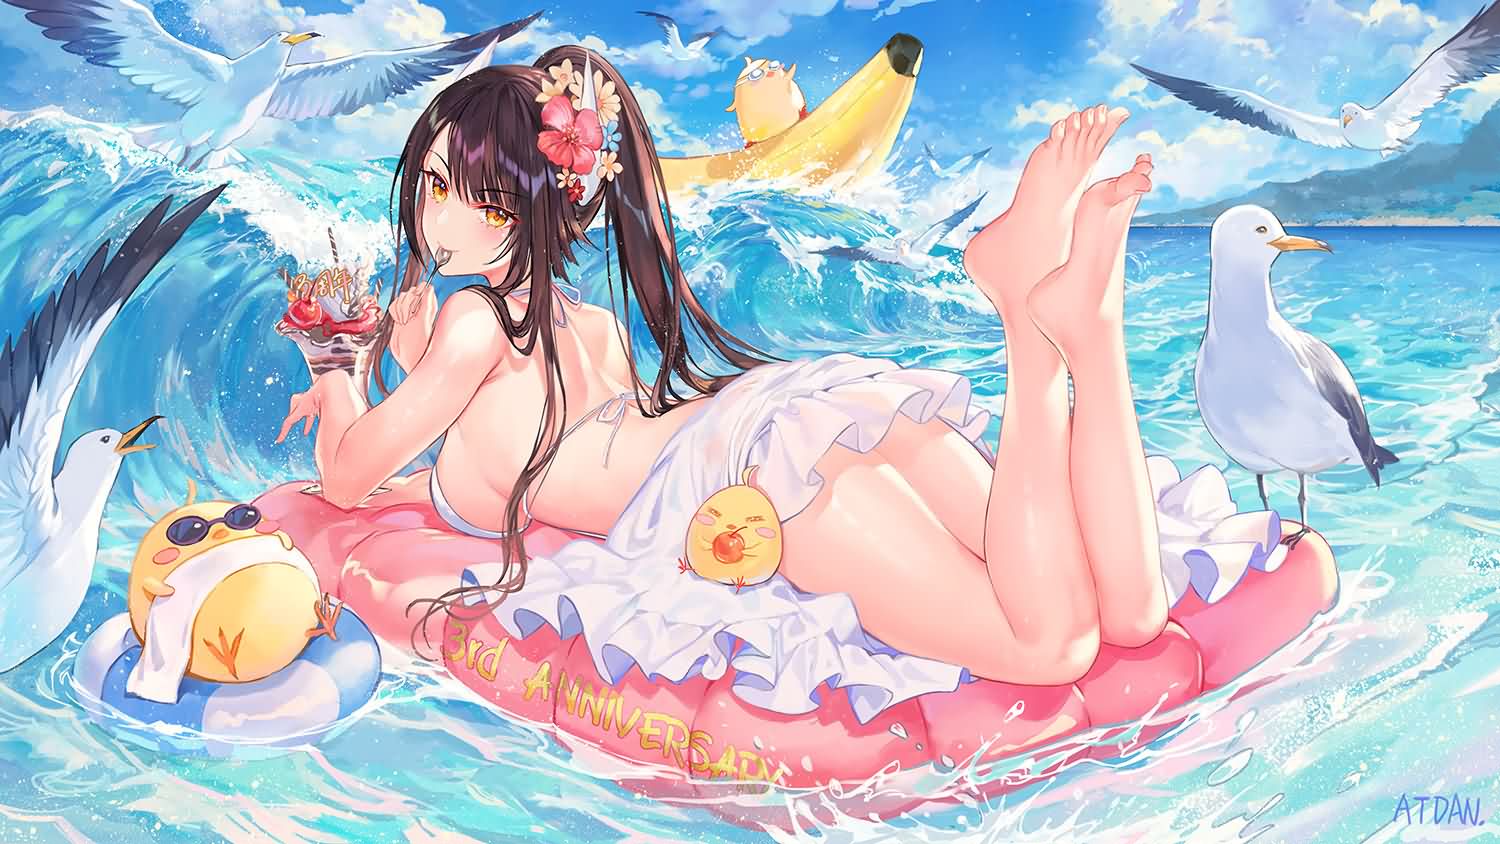 【P站精选】夏季绅士必备，《动漫 二次元acg123萌妹泳装》高清墙纸特辑！